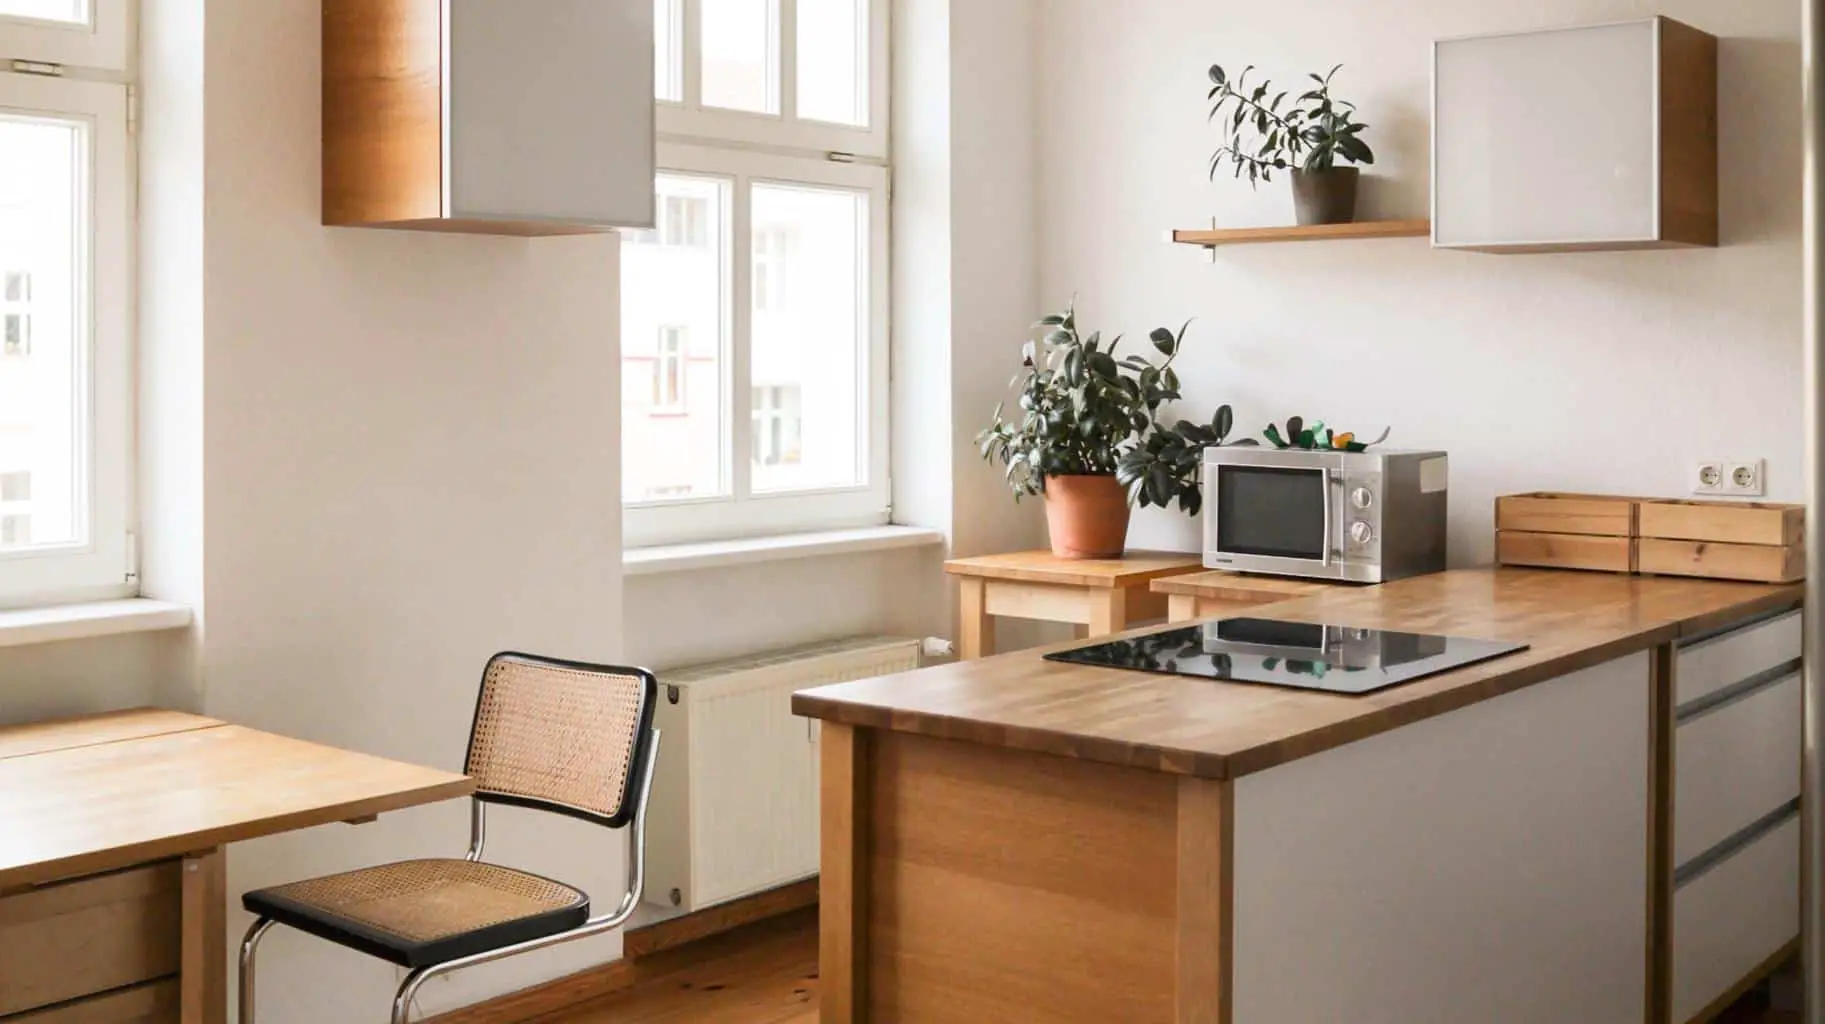 https://minimalism.co/wp-content/uploads/2020/06/essentials-for-a-minimalist-kitchen.jpg